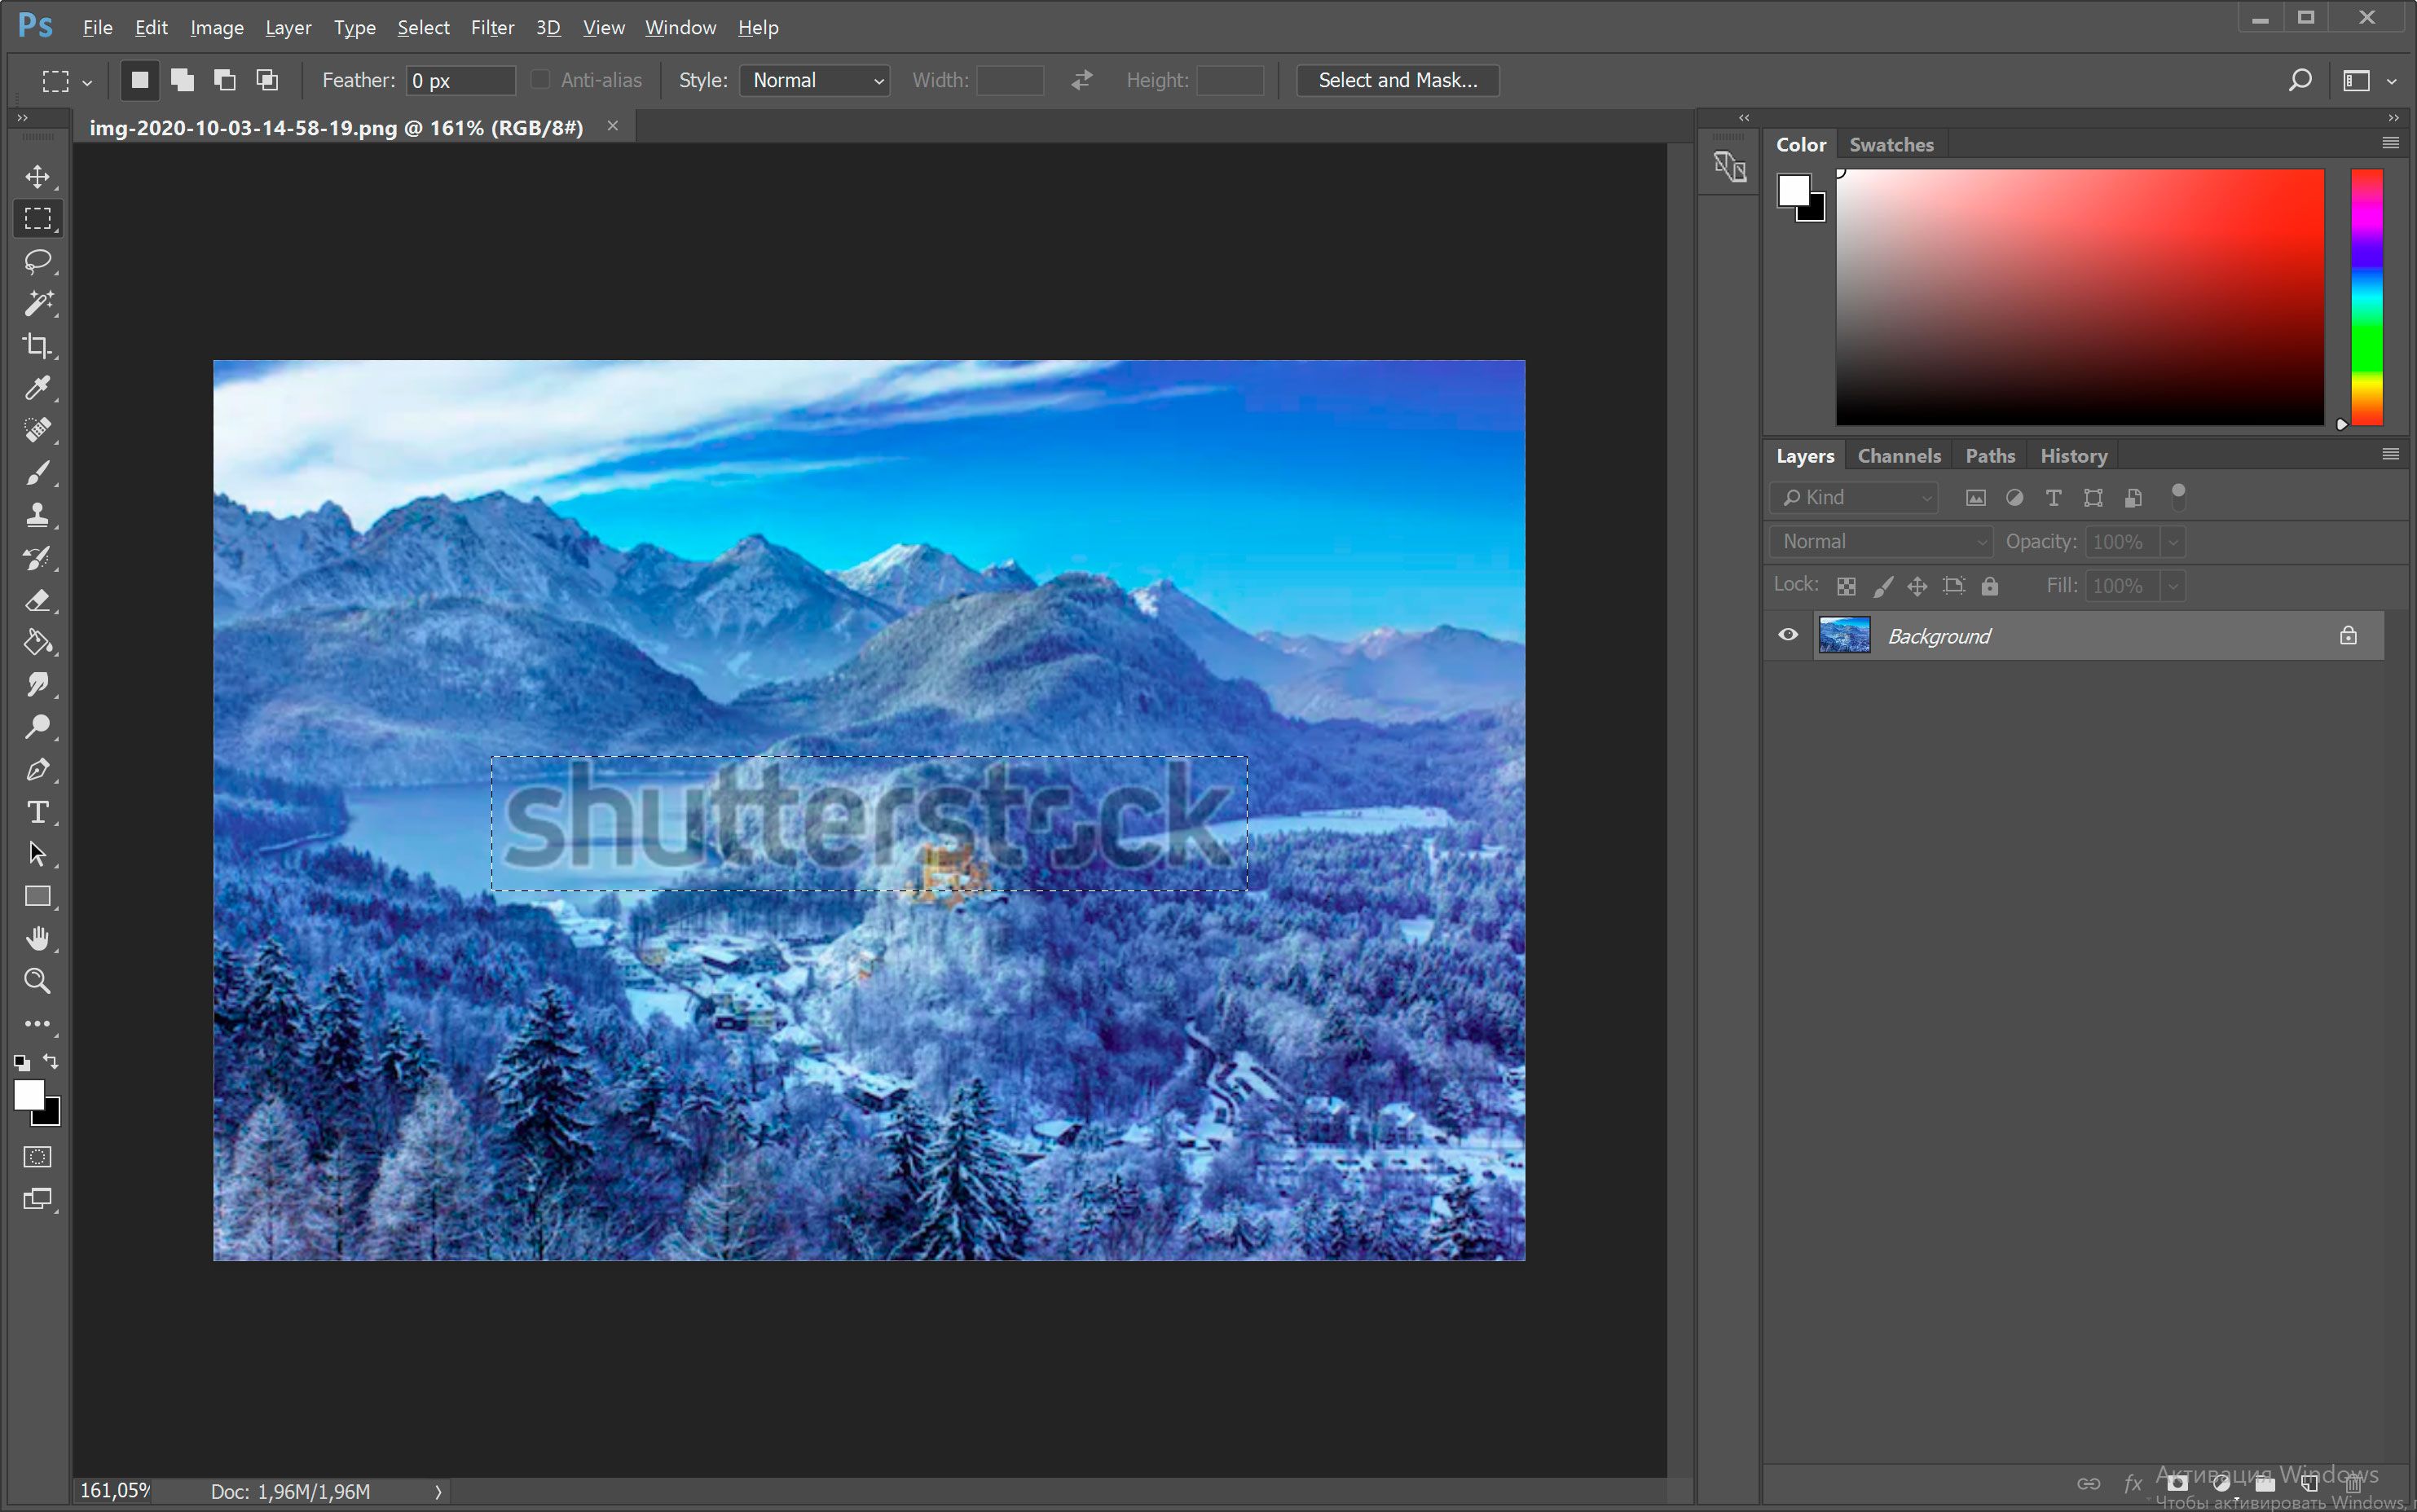 在Photoshop中打开带有Shutterstock水印的图像。..